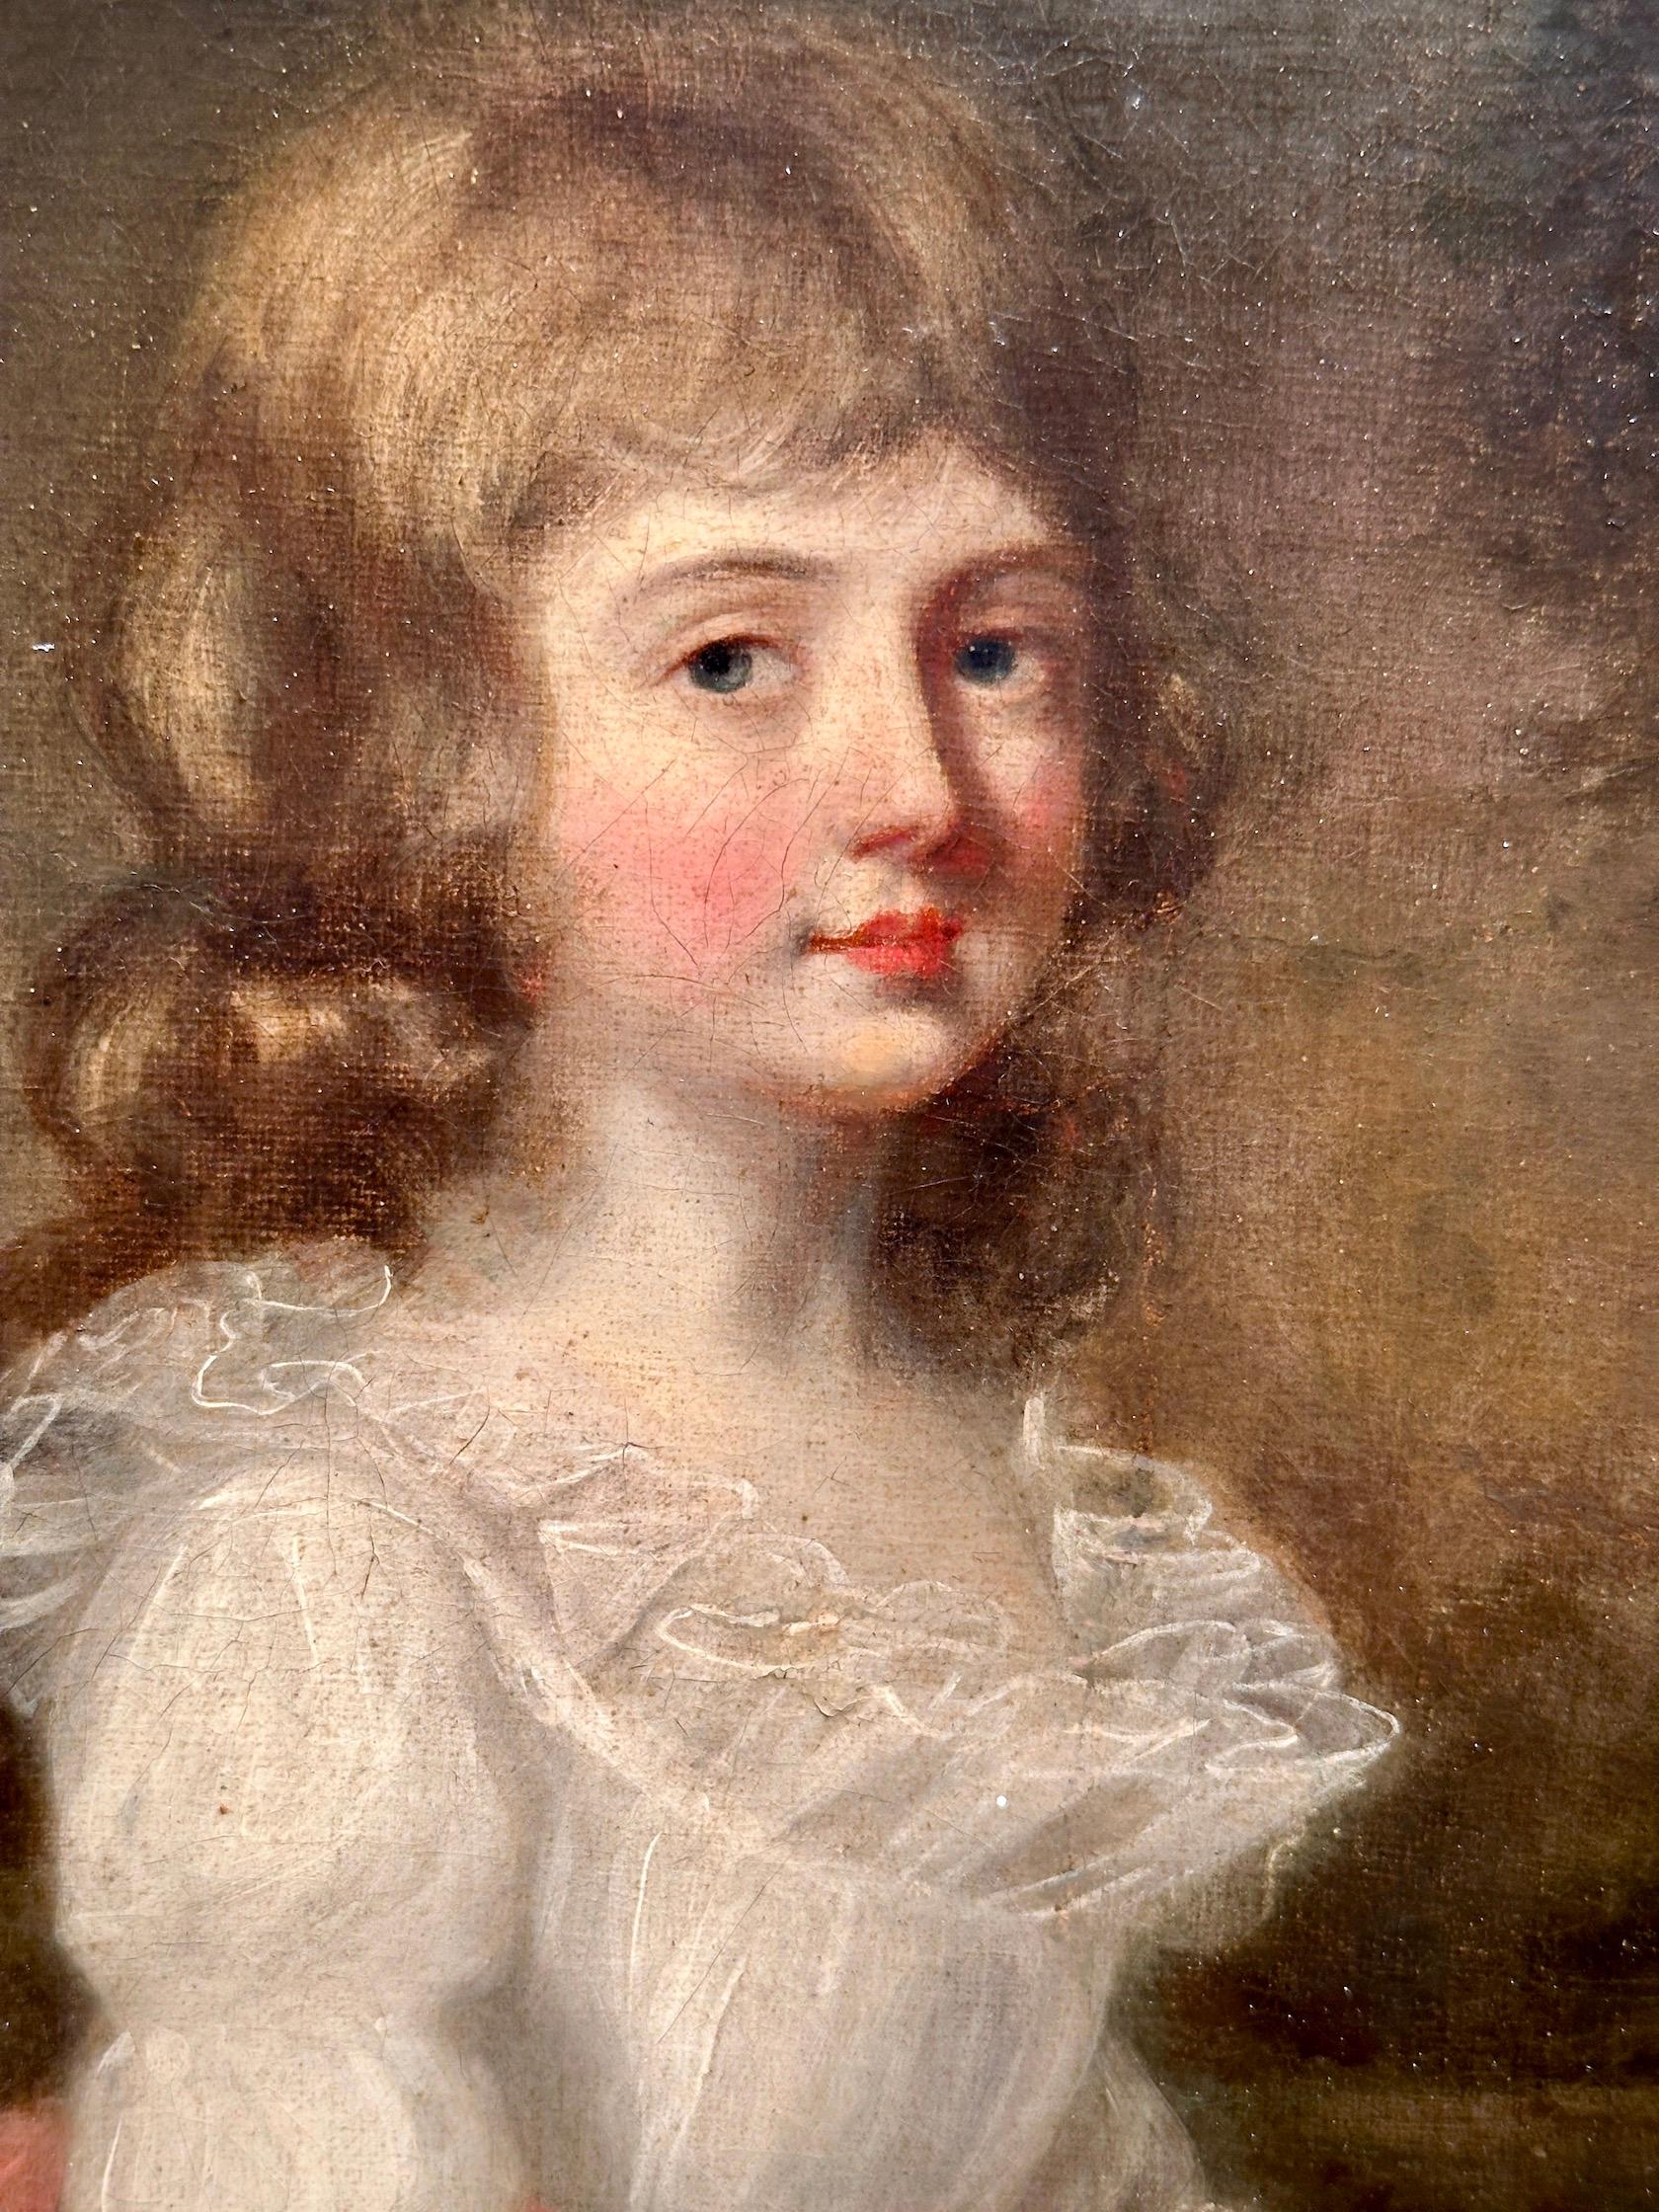 Porträt eines jungen britischen Mädchens in ihrem weißen Kleid mit rosa Schärpe.

Wer sich für den Erwerb eines Porträts eines jungen Mädchens aus dem 18. Jahrhundert des englischen Künstlers John Russell entscheidet, hat die Gelegenheit, ein